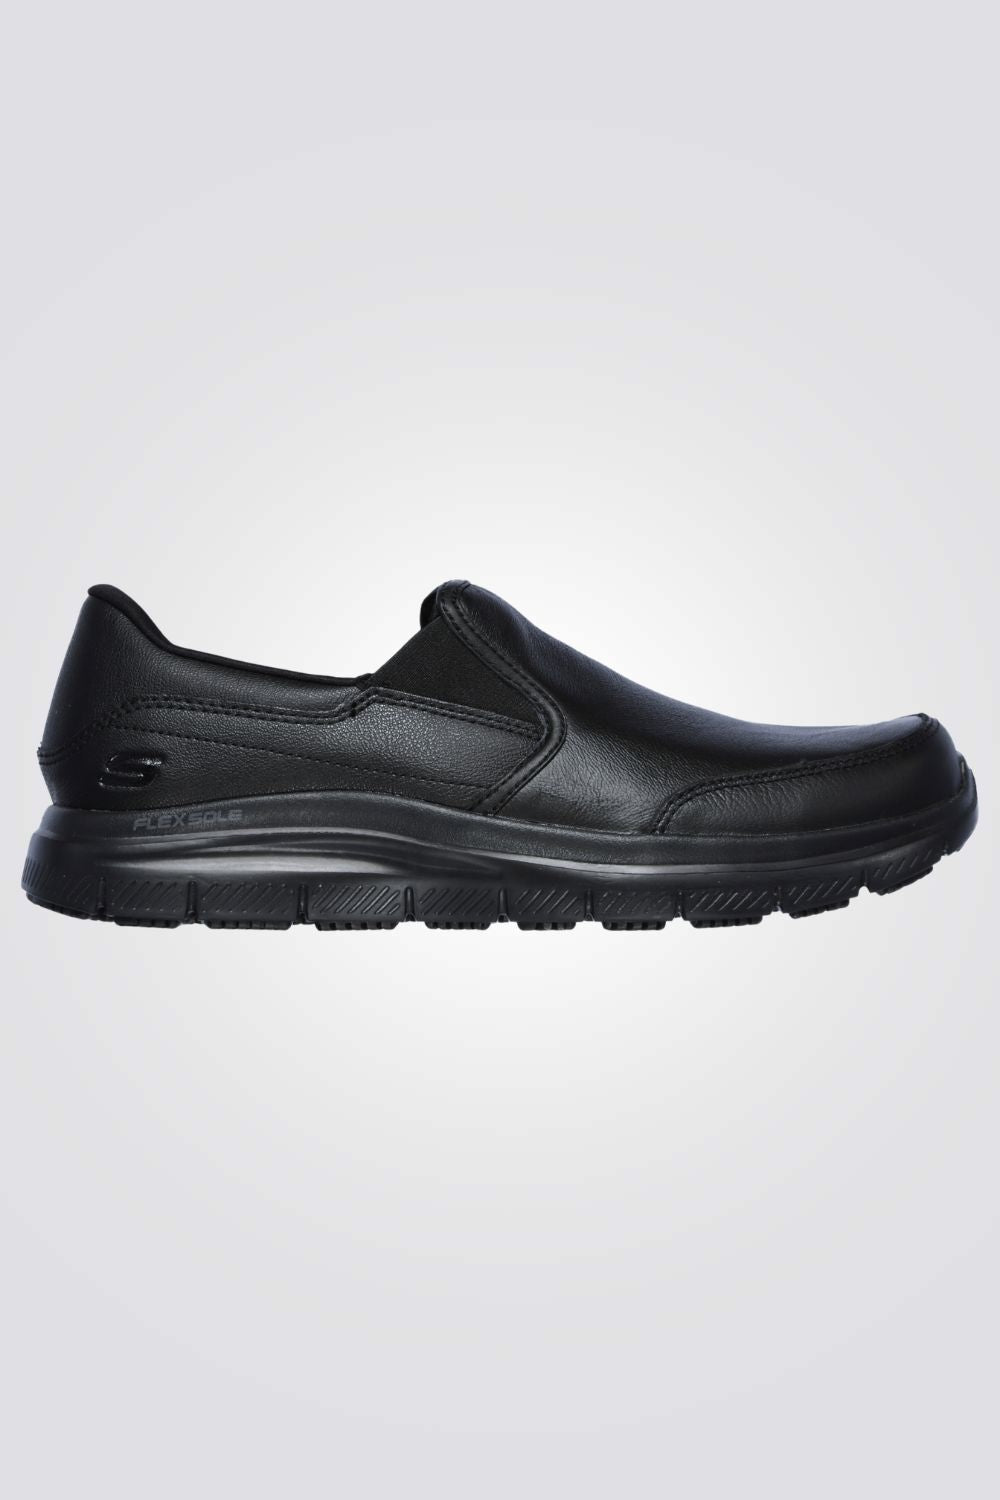 נעליים מבית המותג SKECHERS, בעלות מדרס פנימי רך במיוחד שמספק נוחות בלתי מתפשרת ותמיכה מלאה בכל צעד לאורך כל היום. סולייה חיצונית שמספקת אחיזה מלאה בקרקע